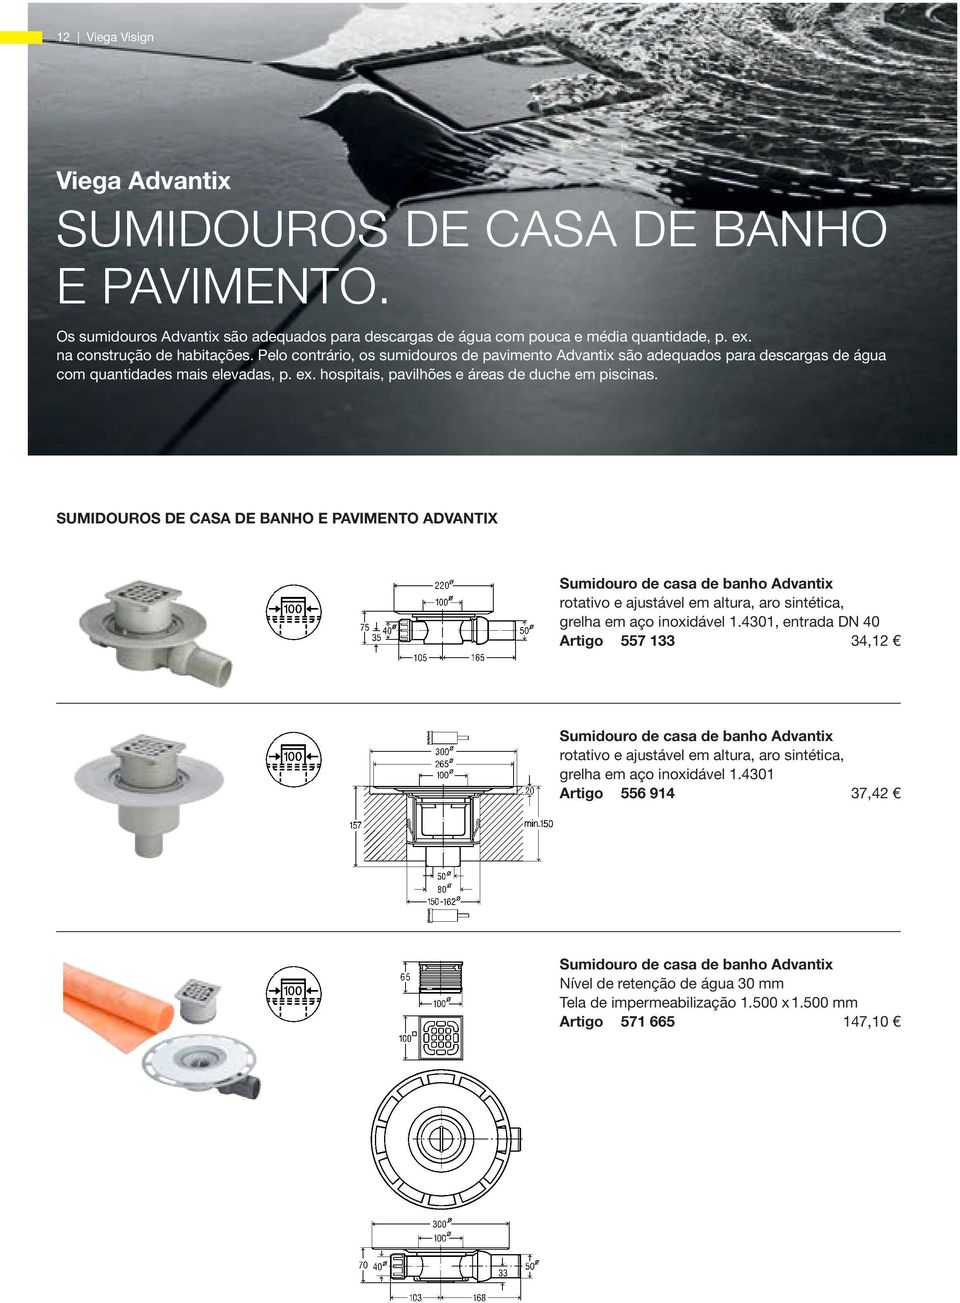 SUMIDOUROS DE CASA DE BANHO E PAVIMENTO ADVANTIX Sumidouro de casa de banho Advantix rotativo e ajustável em altura, aro sintética, grelha em aço inoxidável 1.